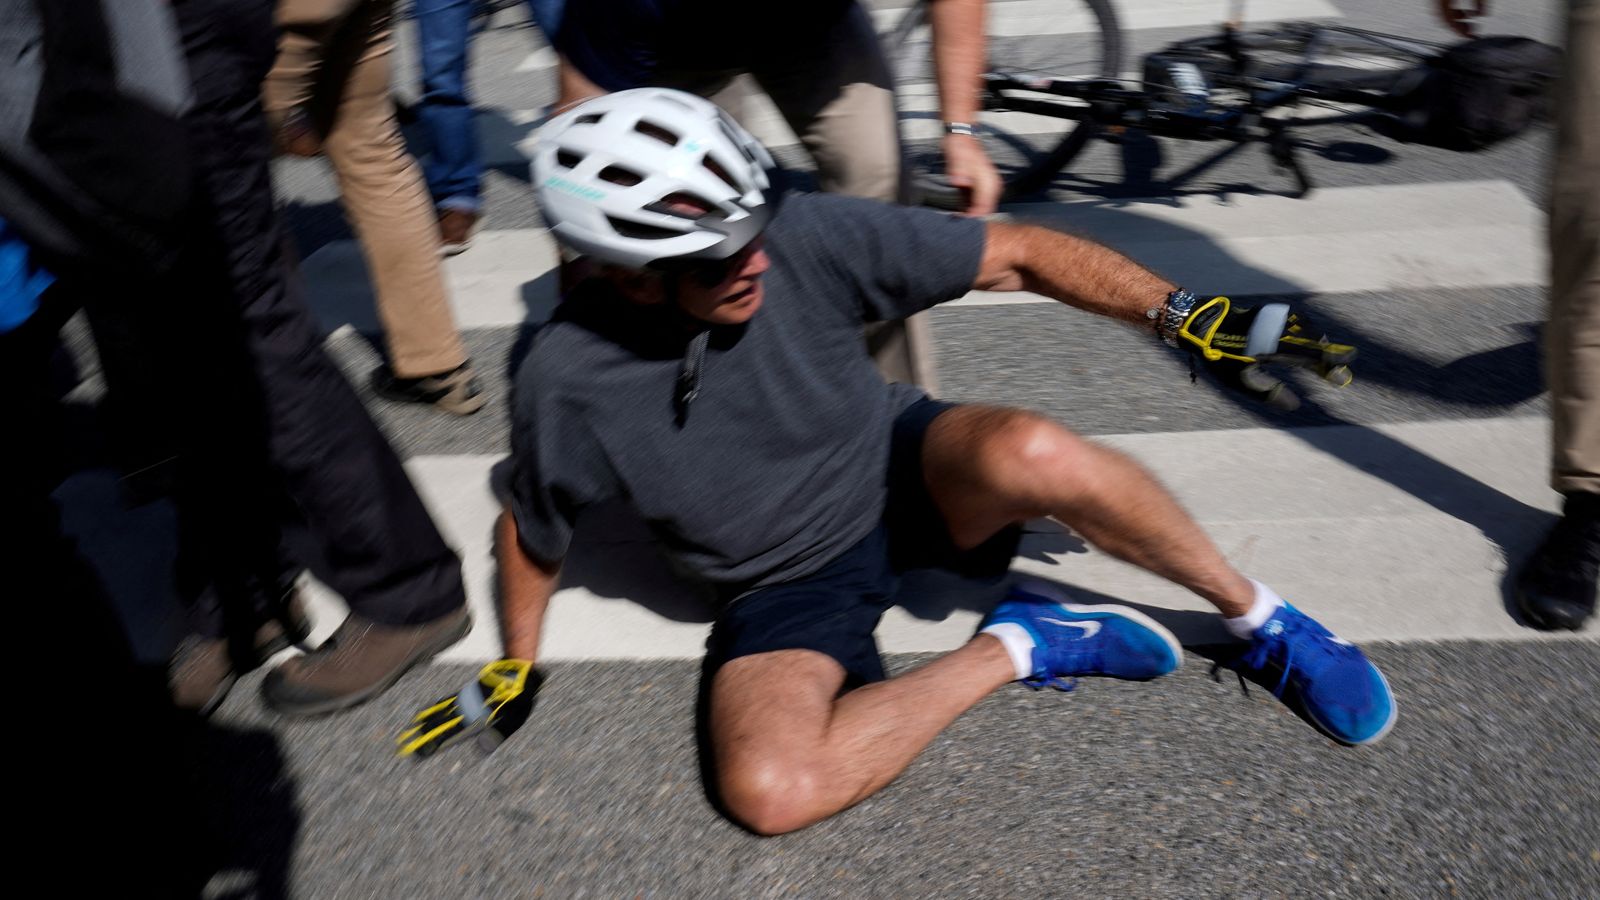 جو بايدن “اشتعلت على قدميه” بعد أن سقط على الشاطئ مع زوجته جيل أثناء نزوله من الدراجة |  أخبار أمريكية